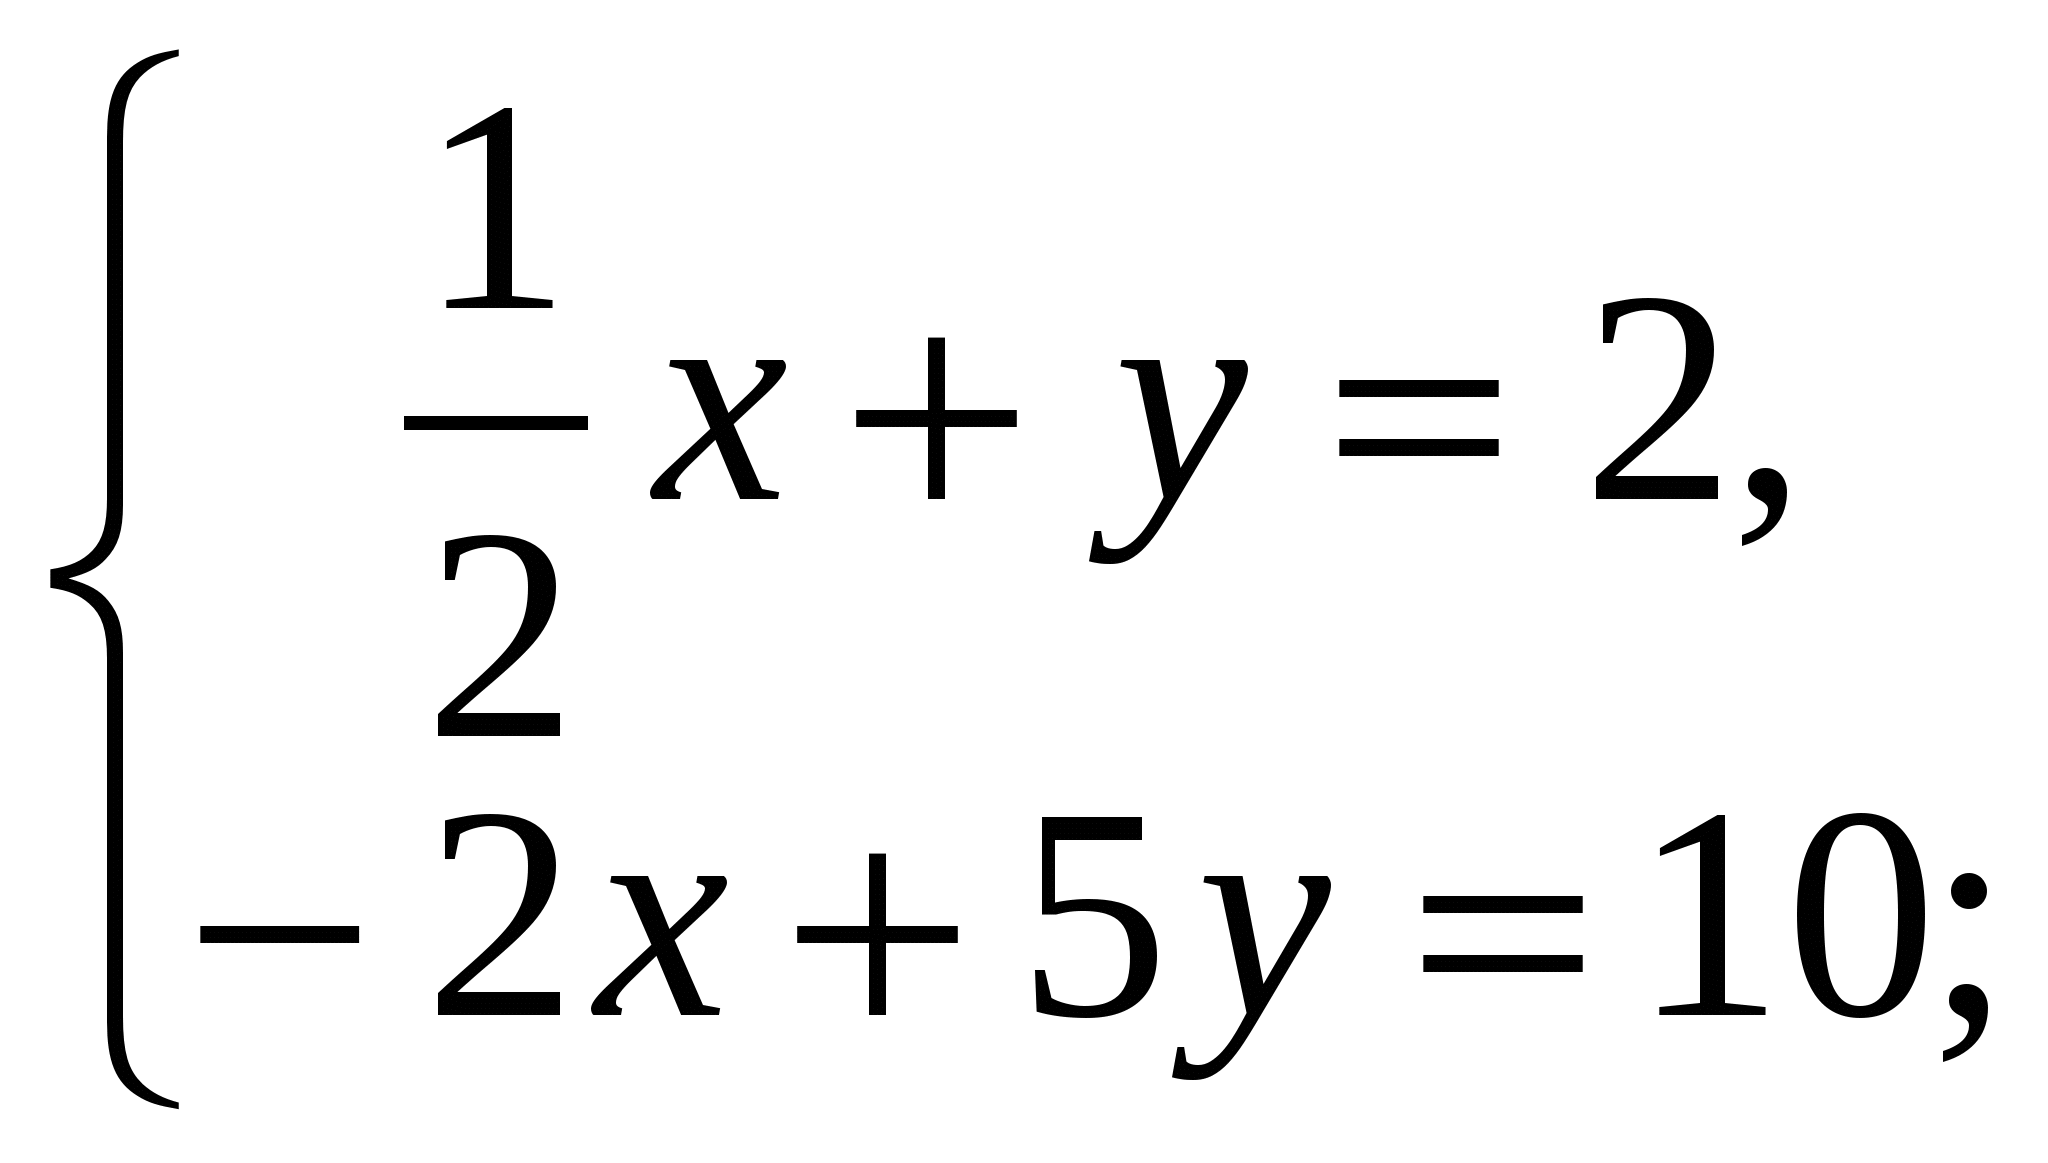 Линейные уравнения с двумя переменными 6 класс